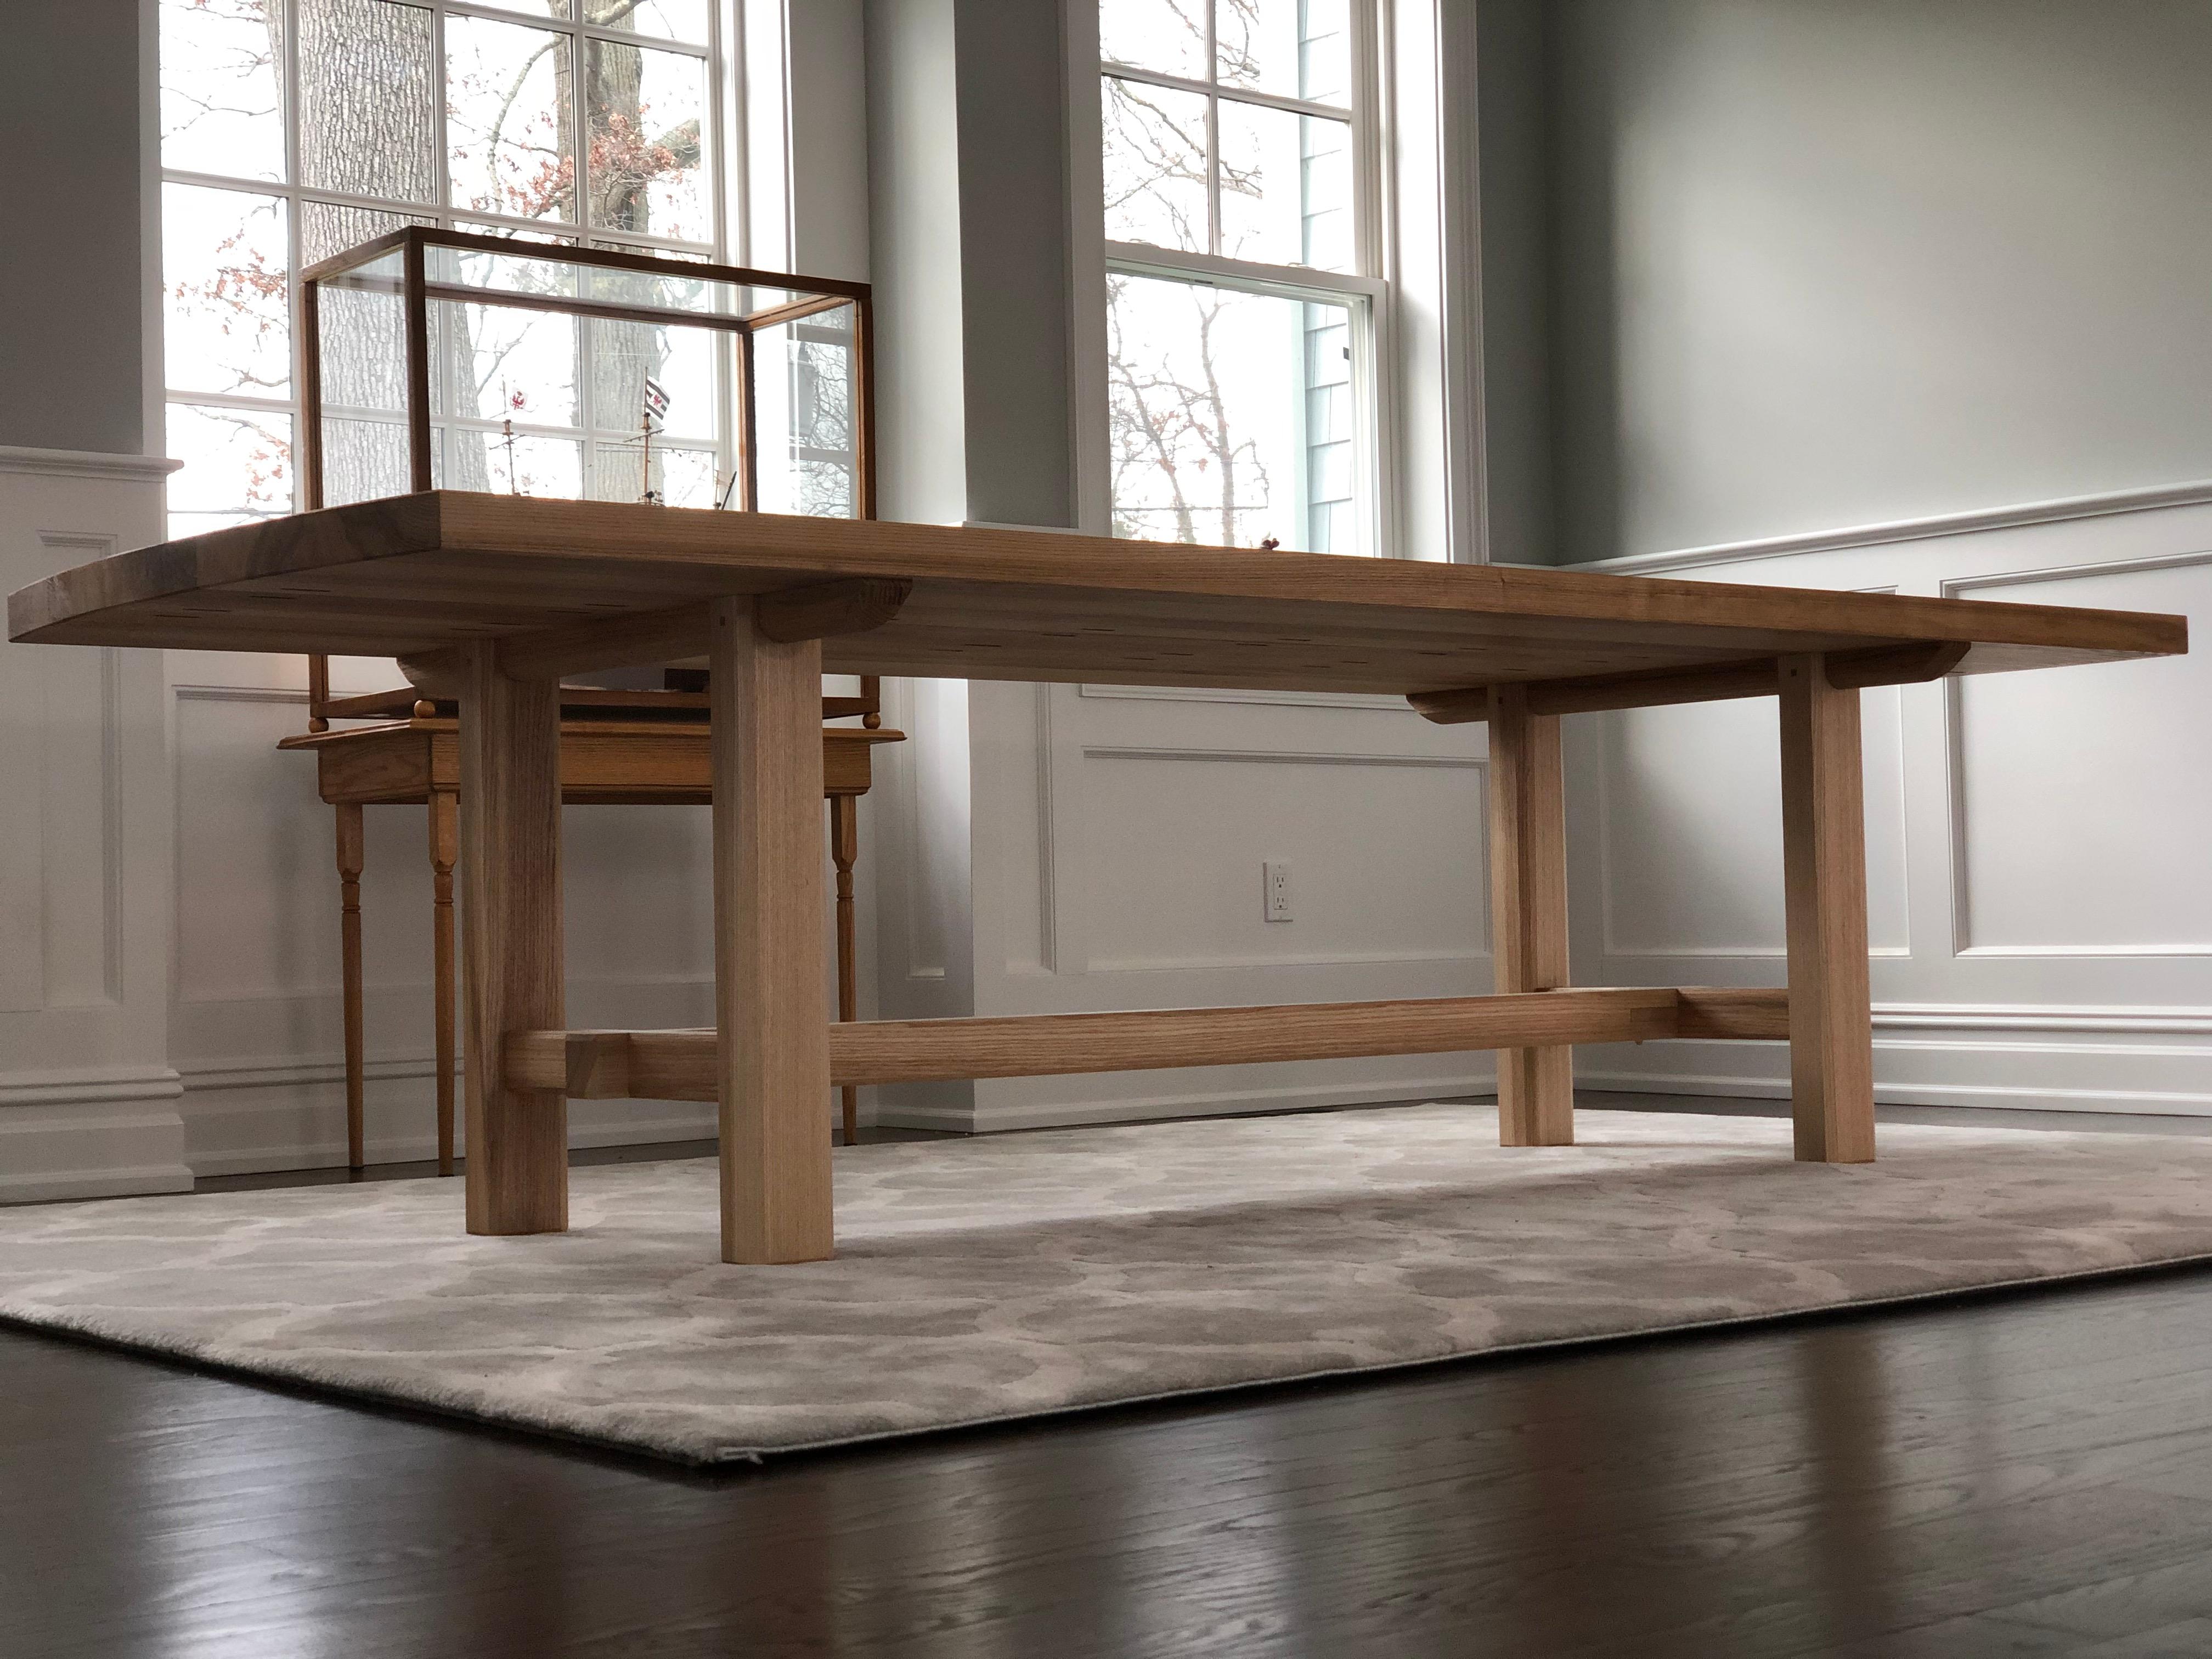 Cette table de salle à manger faite à la main et composée de lourdes dalles et de pieds de tréteaux présente des éléments propres à la charpenterie traditionnelle japonaise, ce qui en fait une table de salle à manger subtile et très solide. Cette